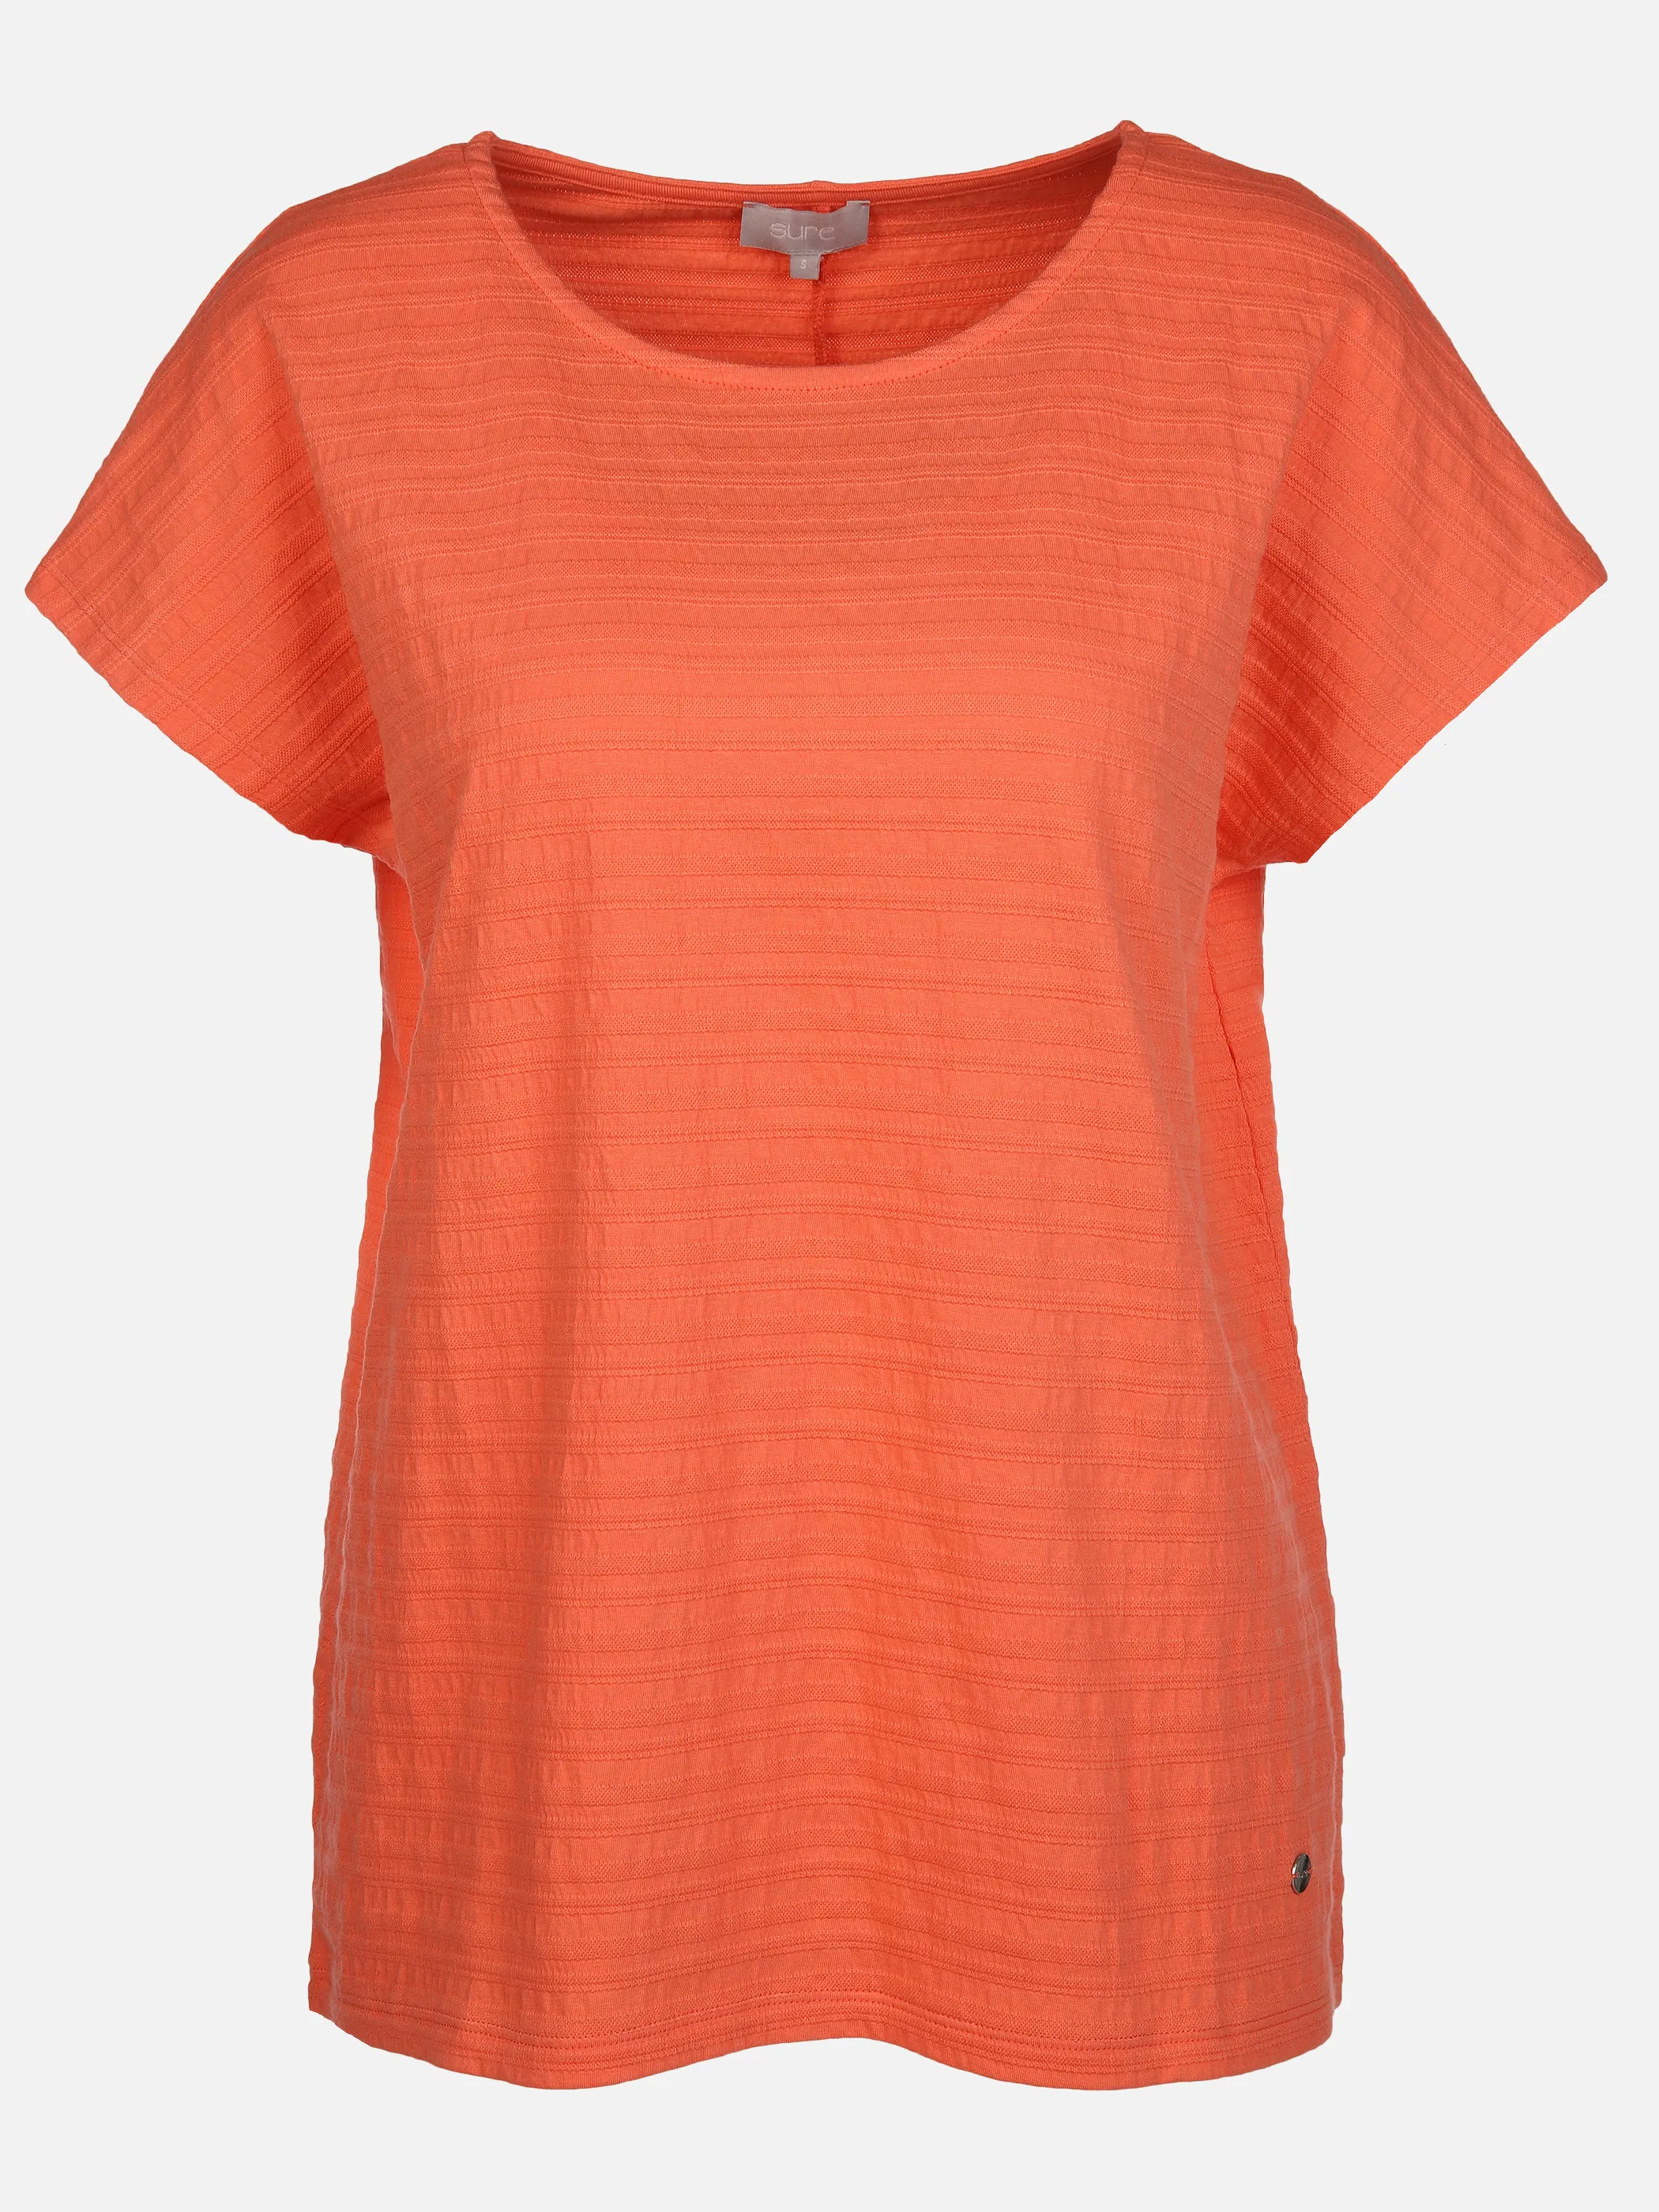 Sure Da-Struktur-Jacquard-Shirt Orange 890104 PAPAYA 1